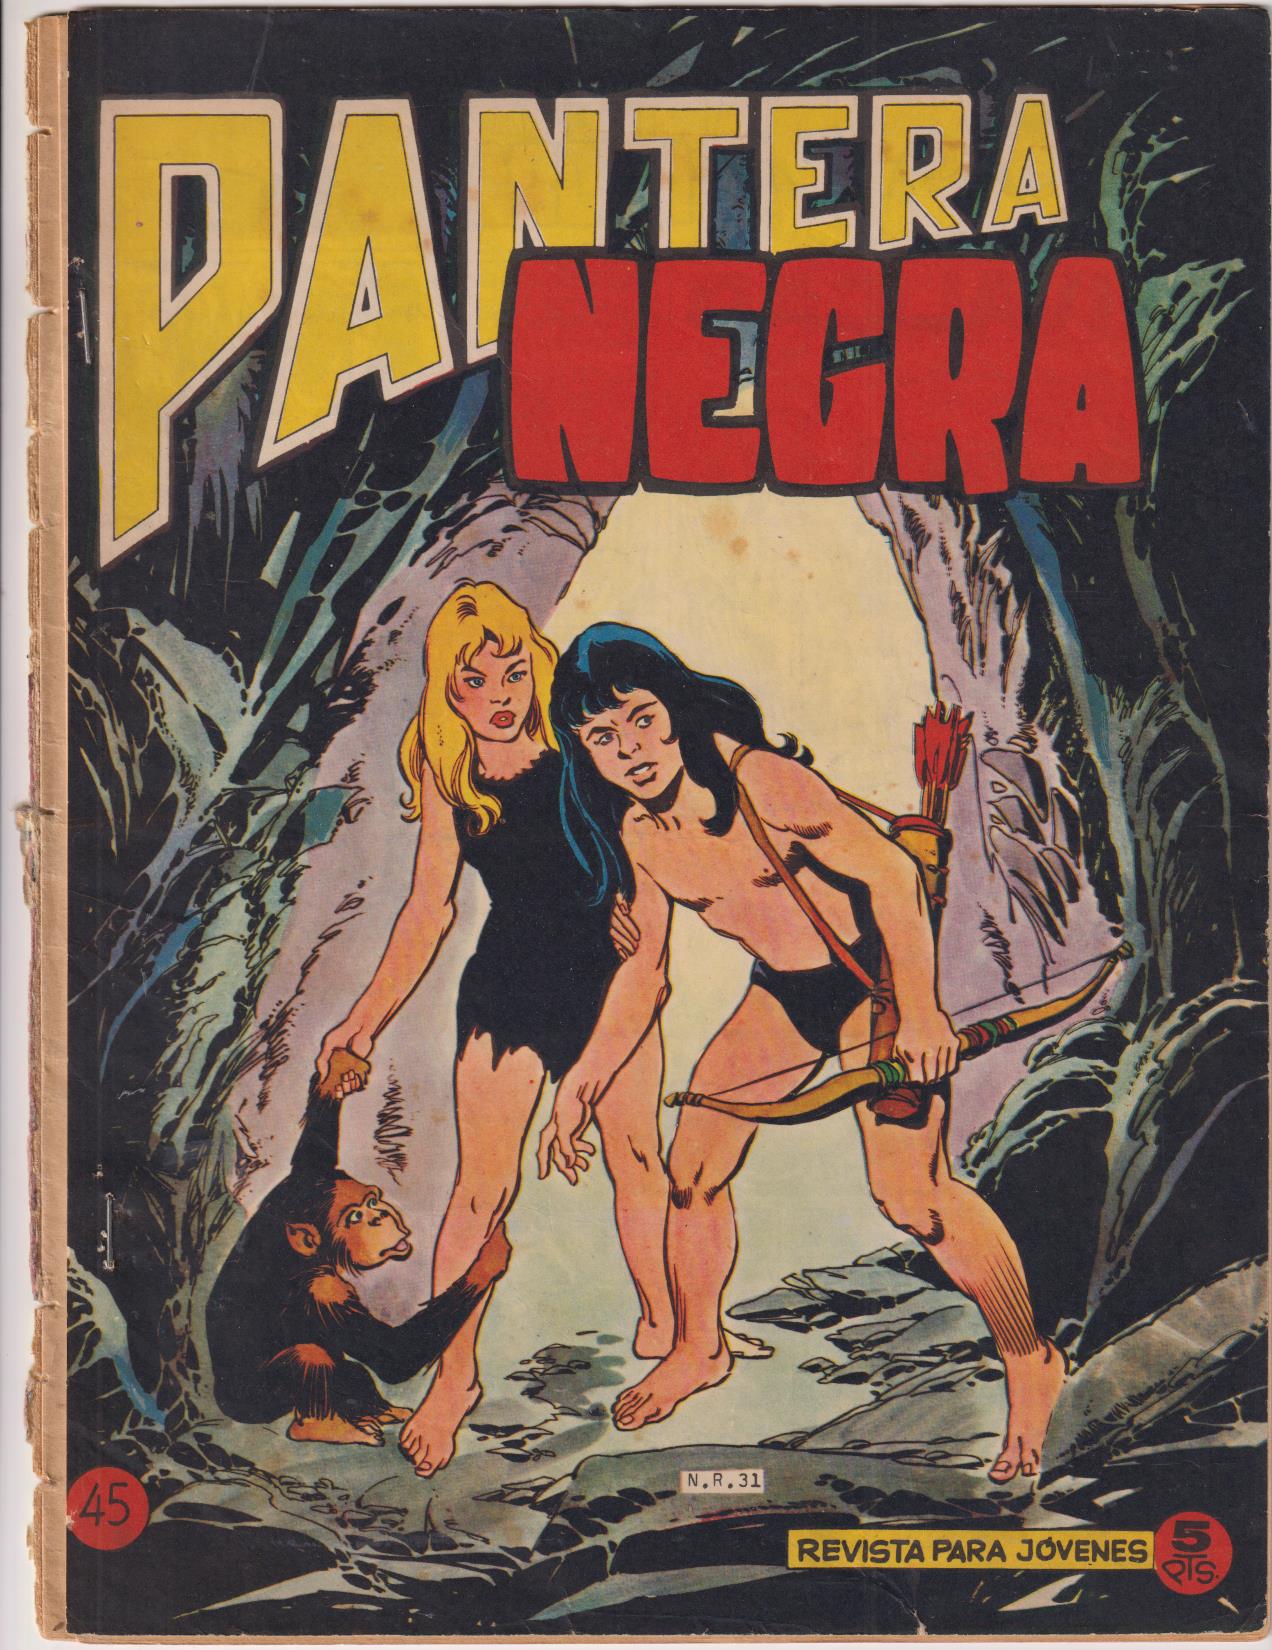 Pantera Negra Revista nº 45. Maga 1964